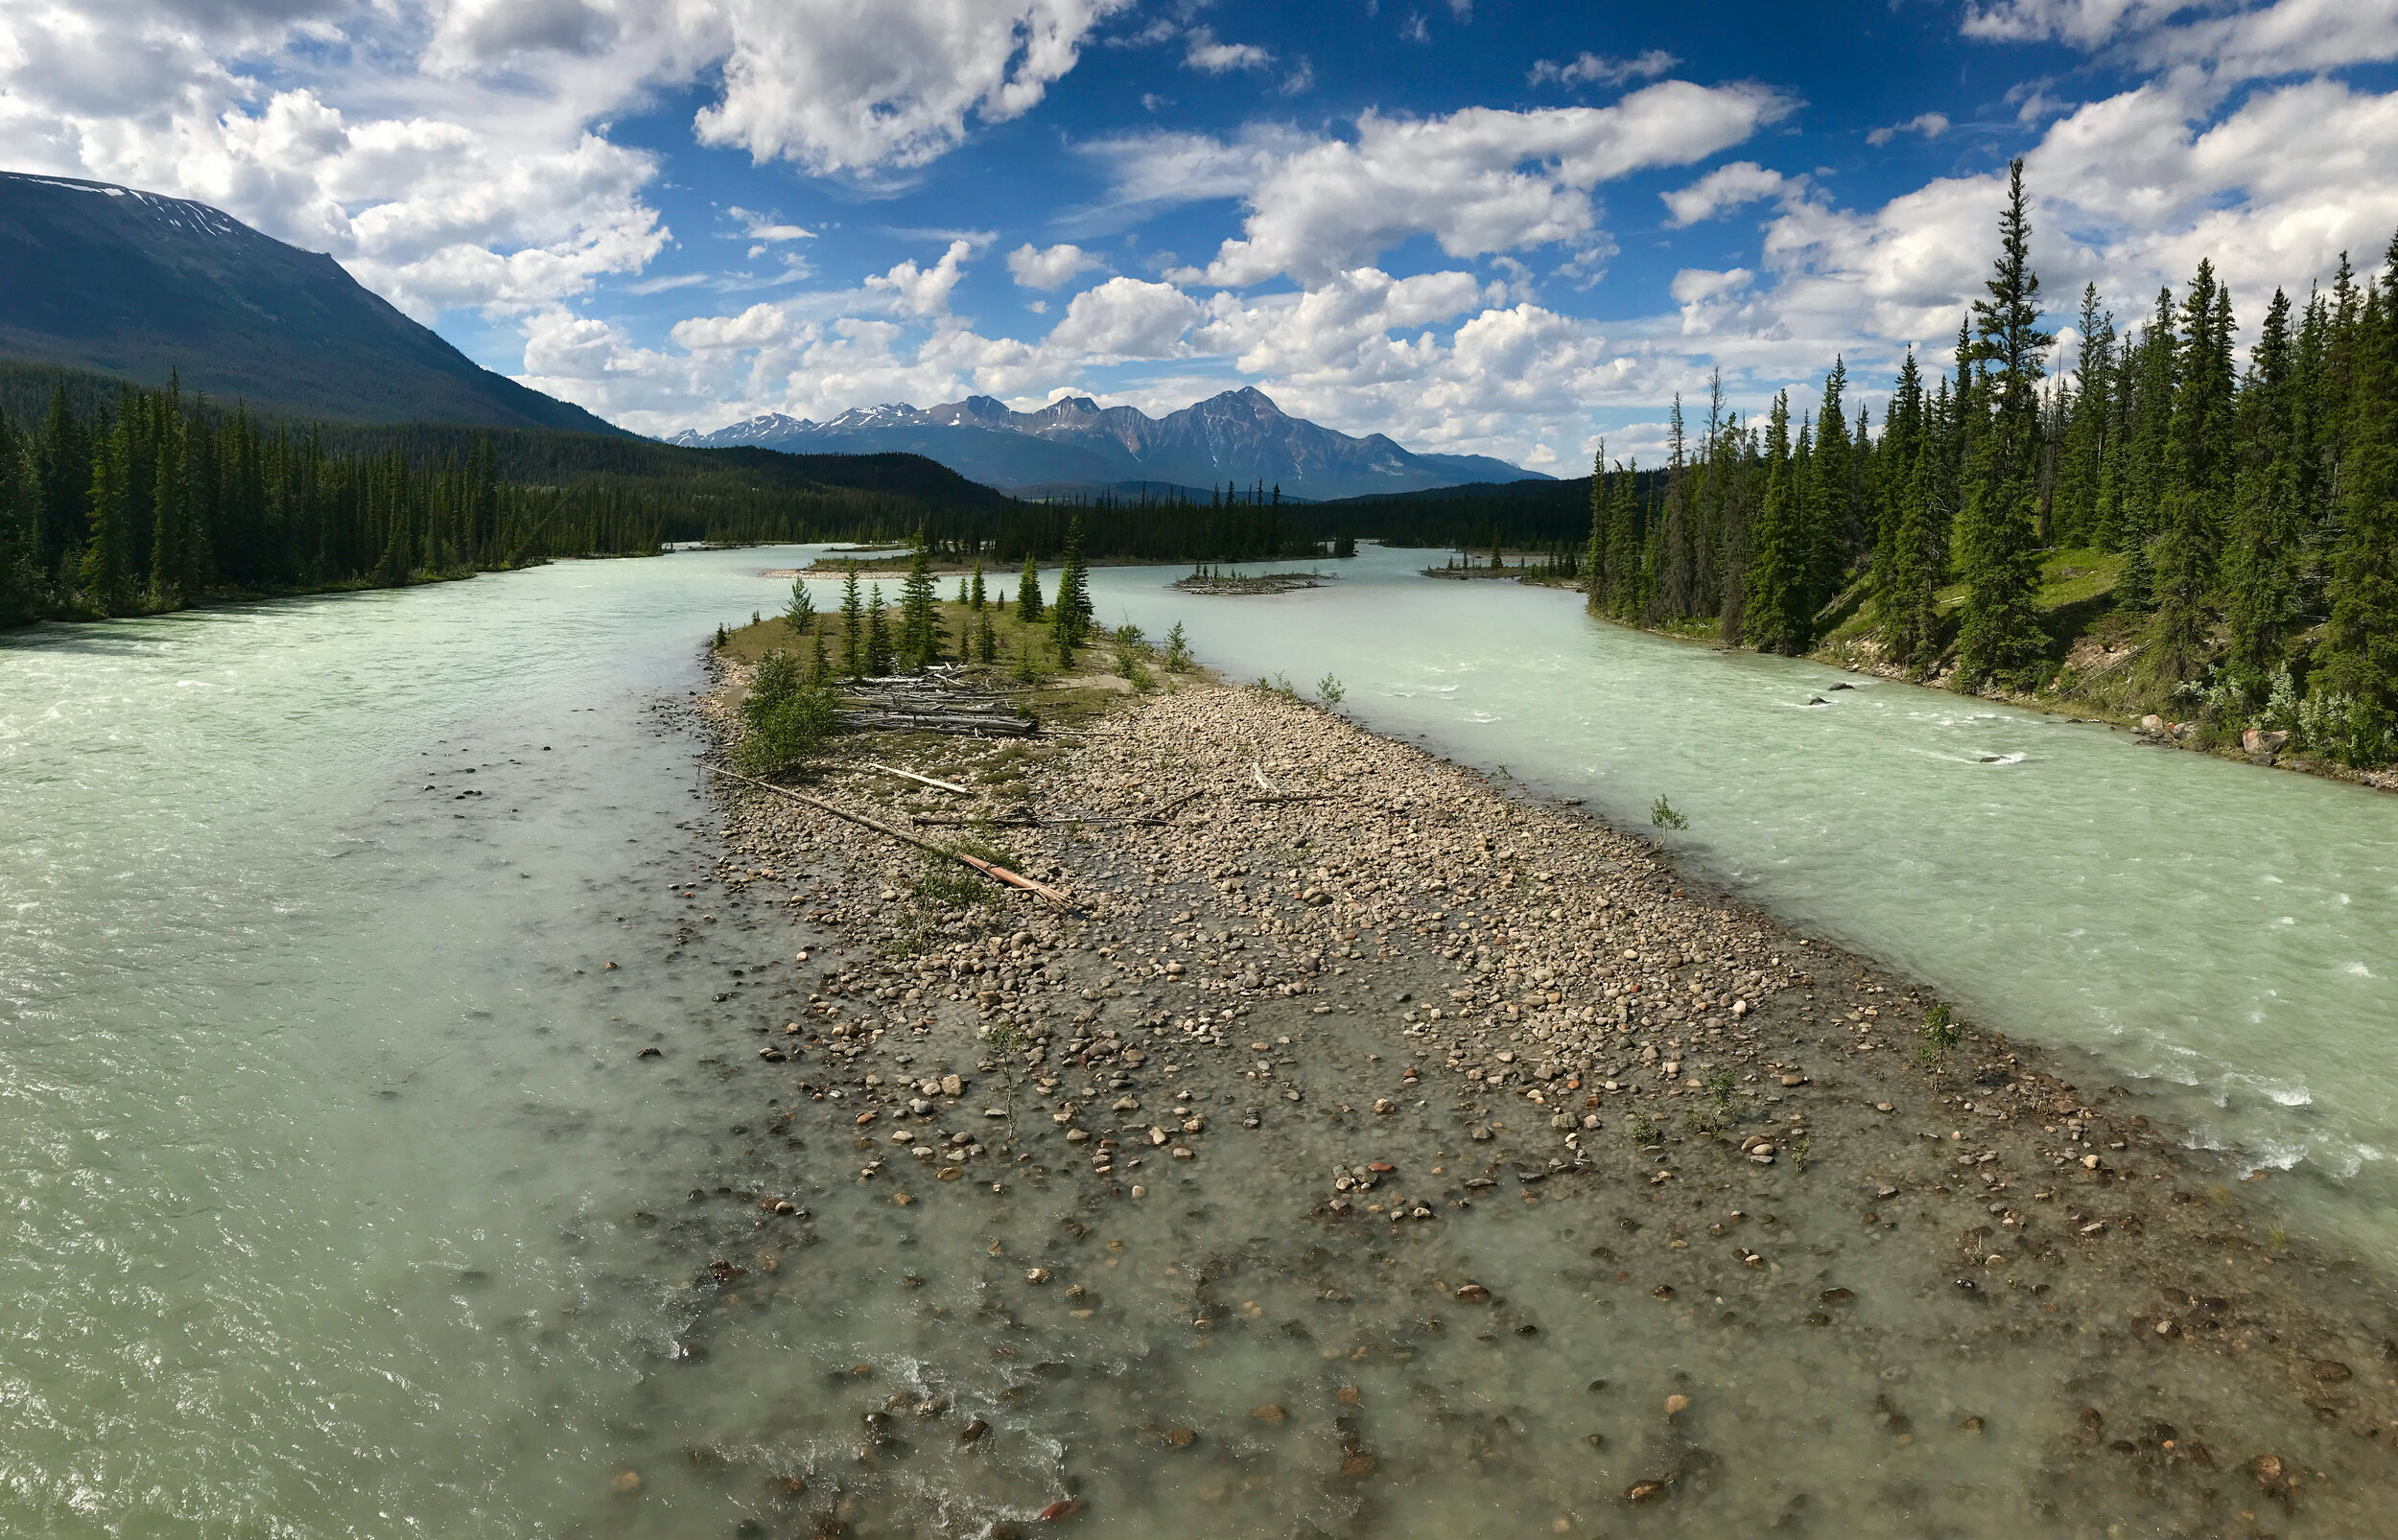 Rockies & Athabasca River, Canada